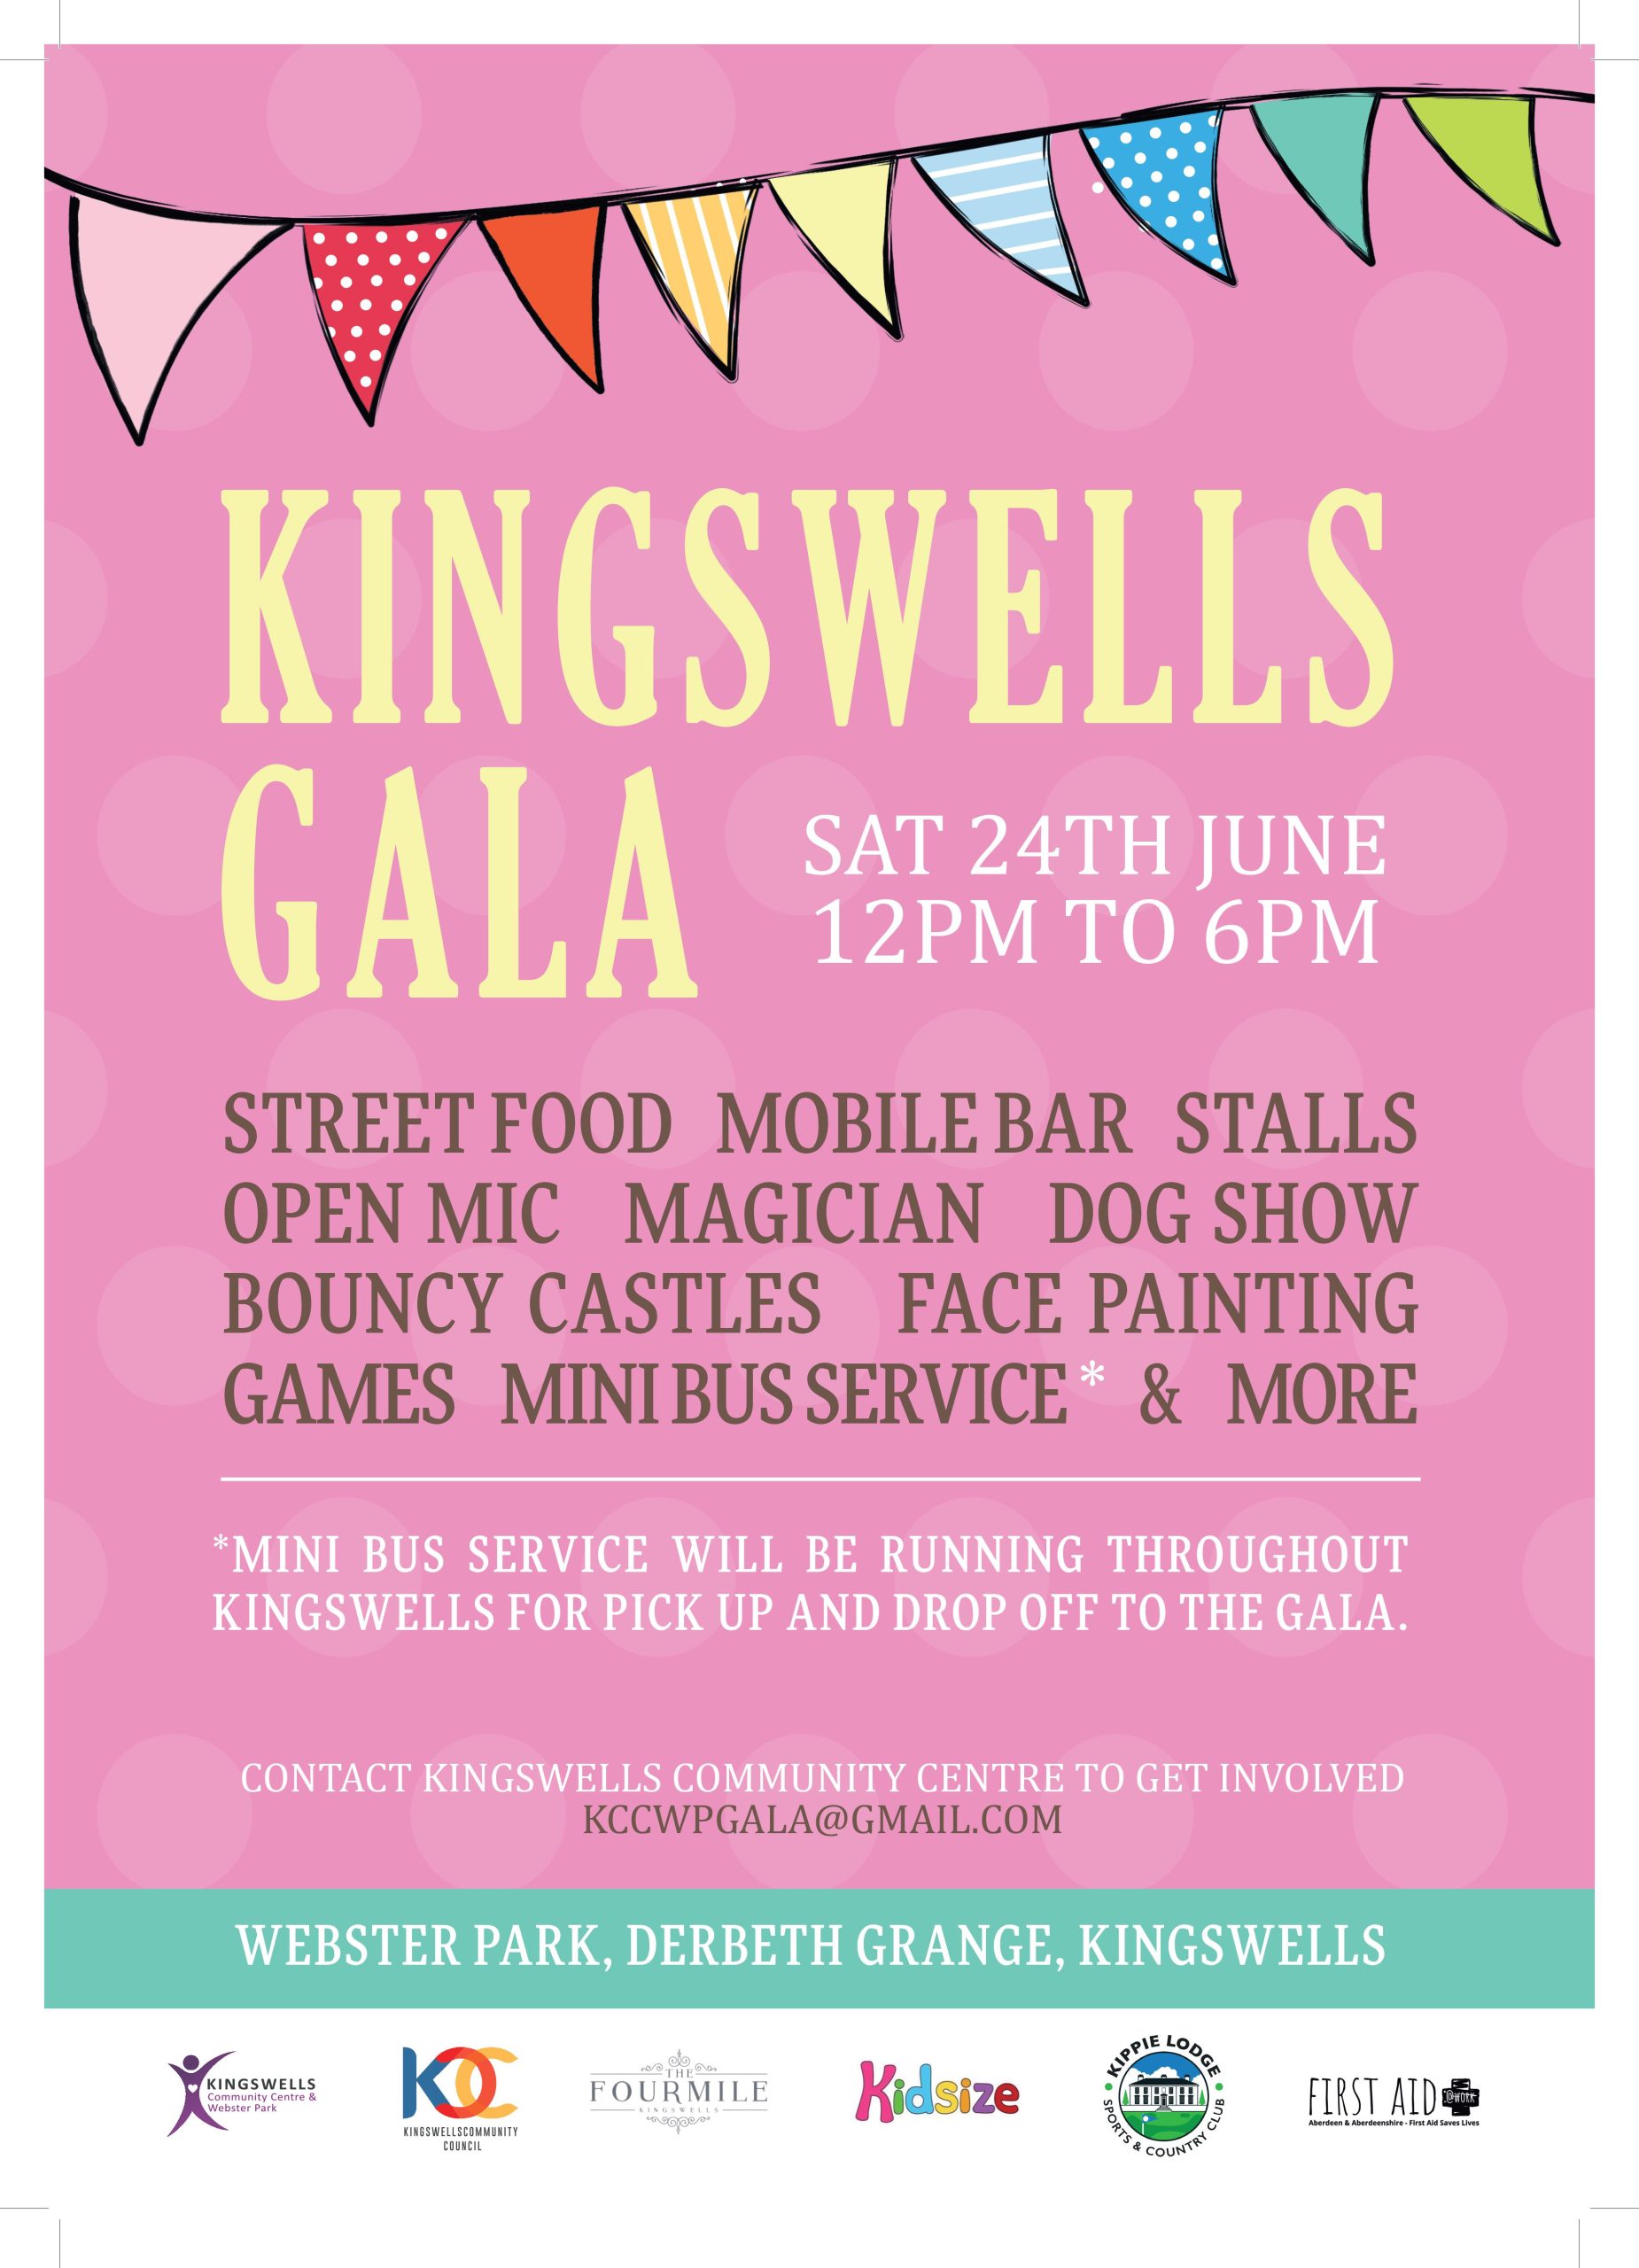 Kingswells Gala